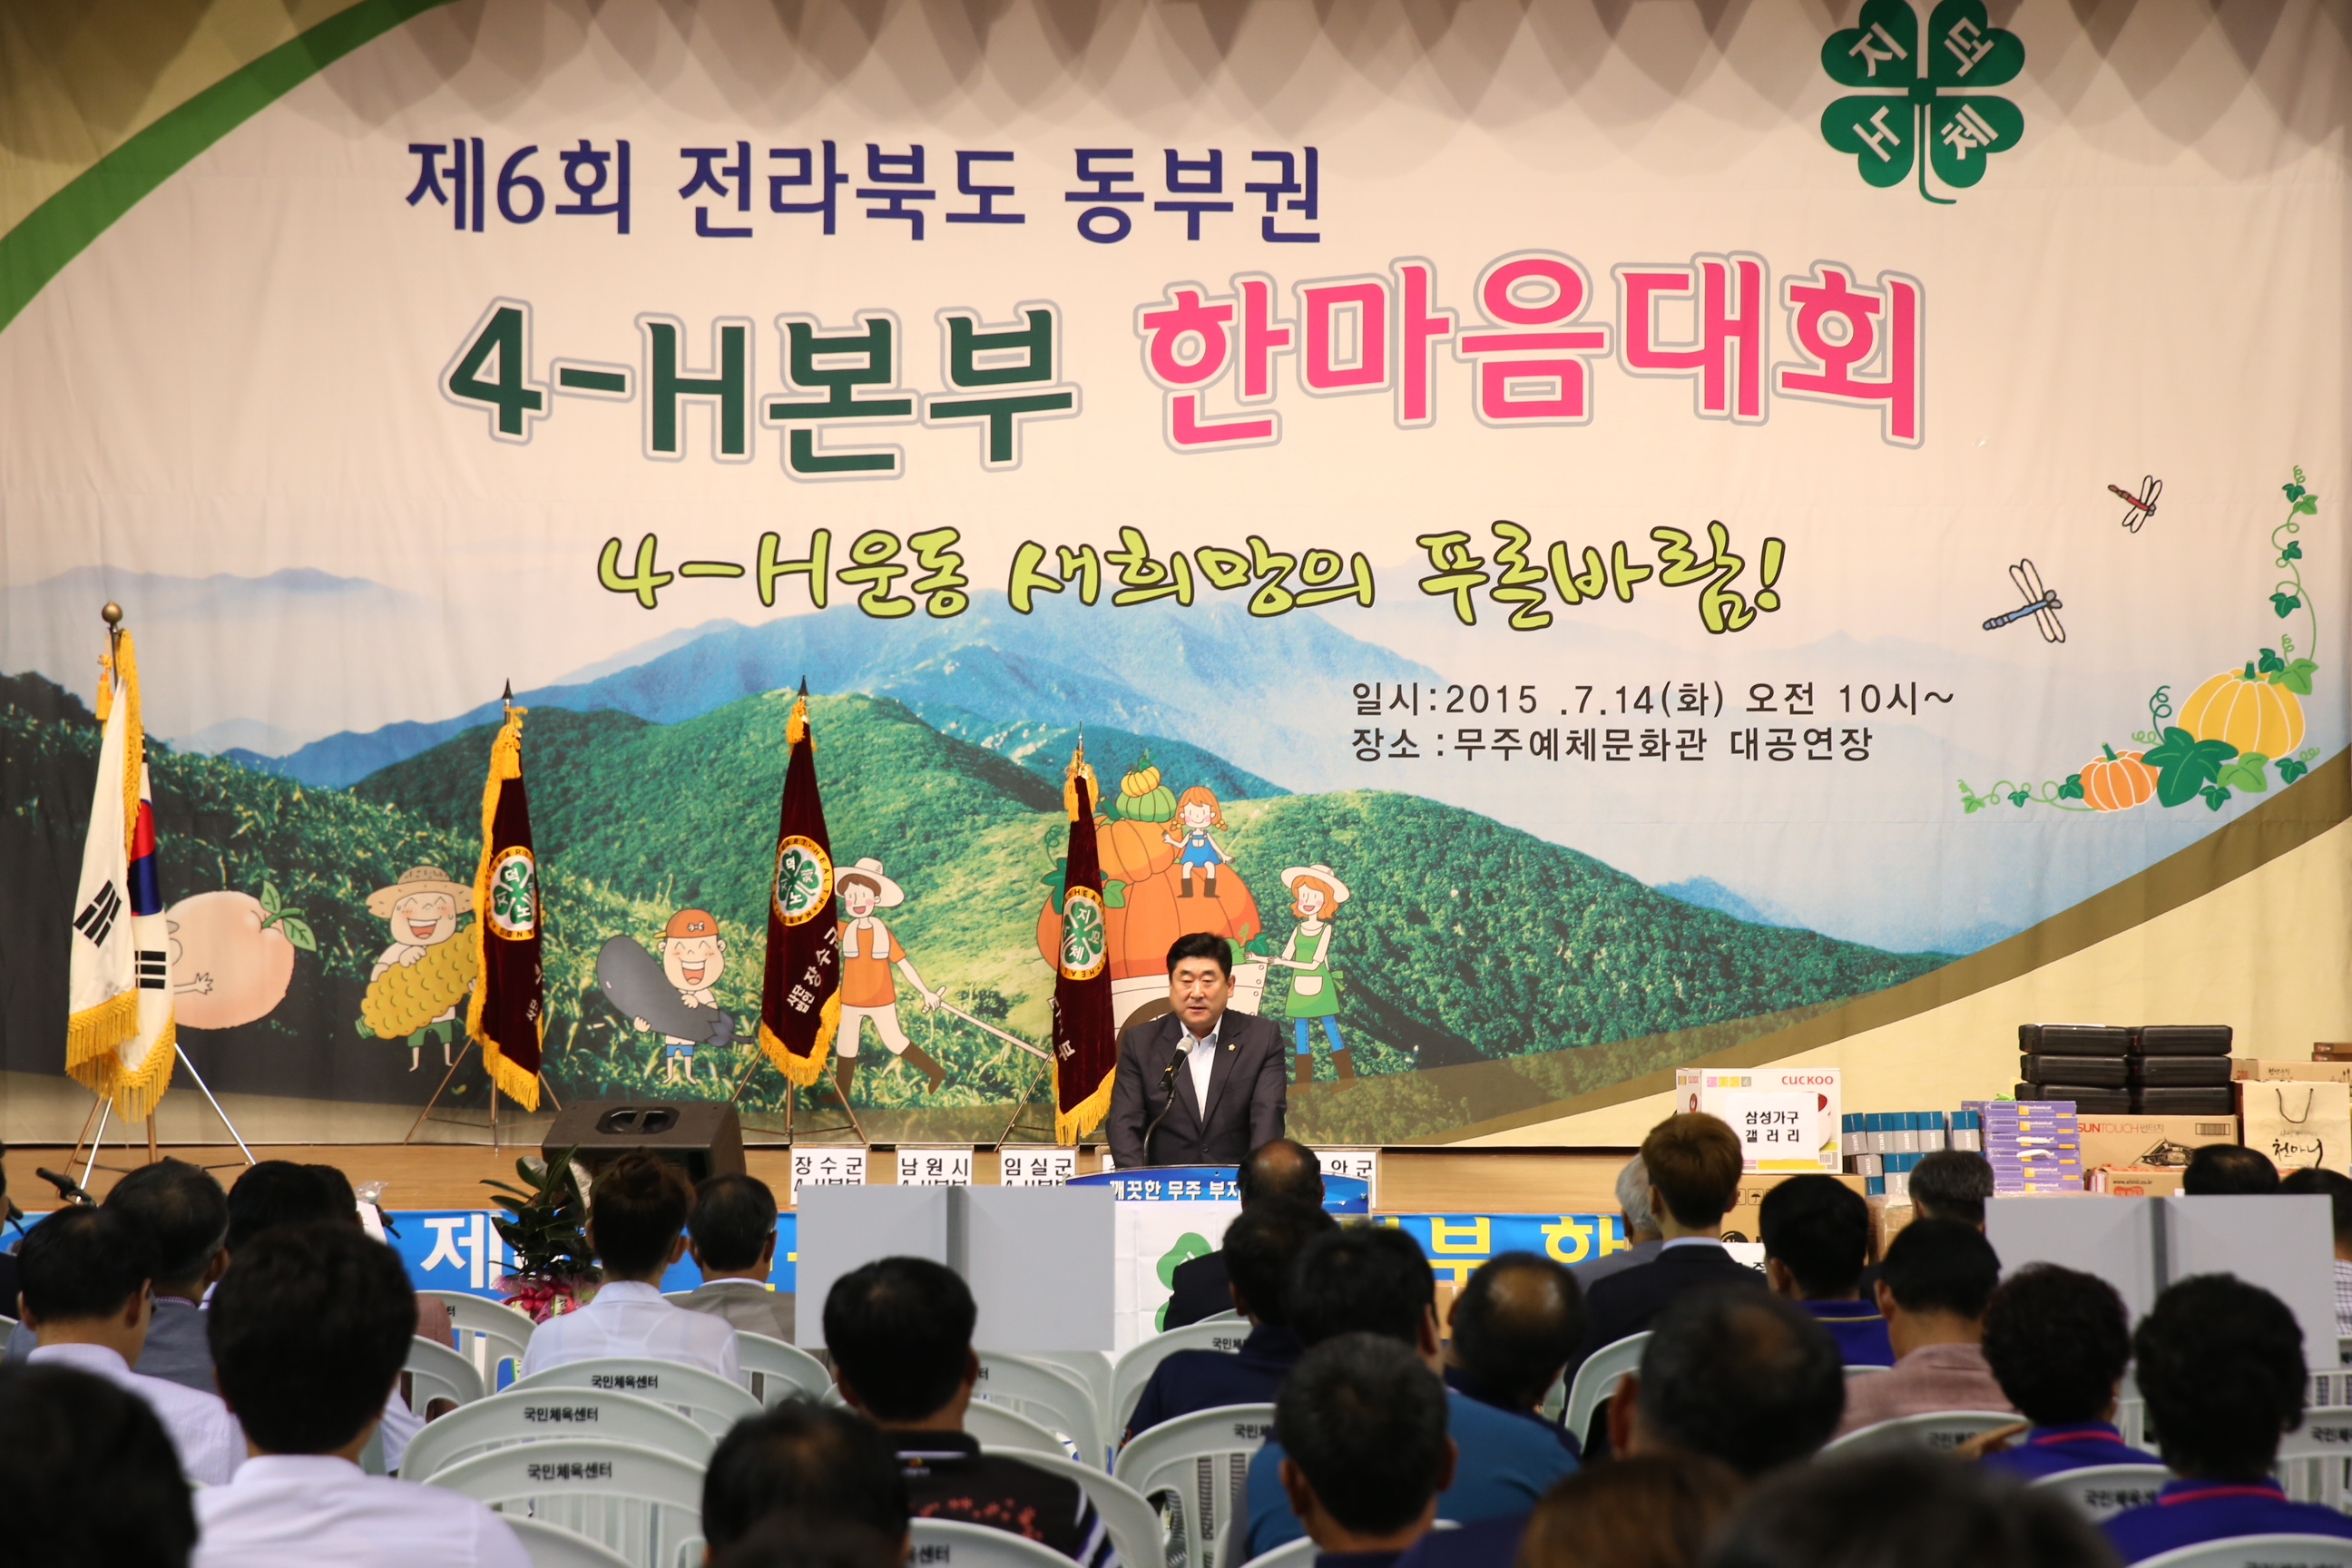 2015.07.14. 제6회 전라북도 동부권 4-H본부 한마음대회